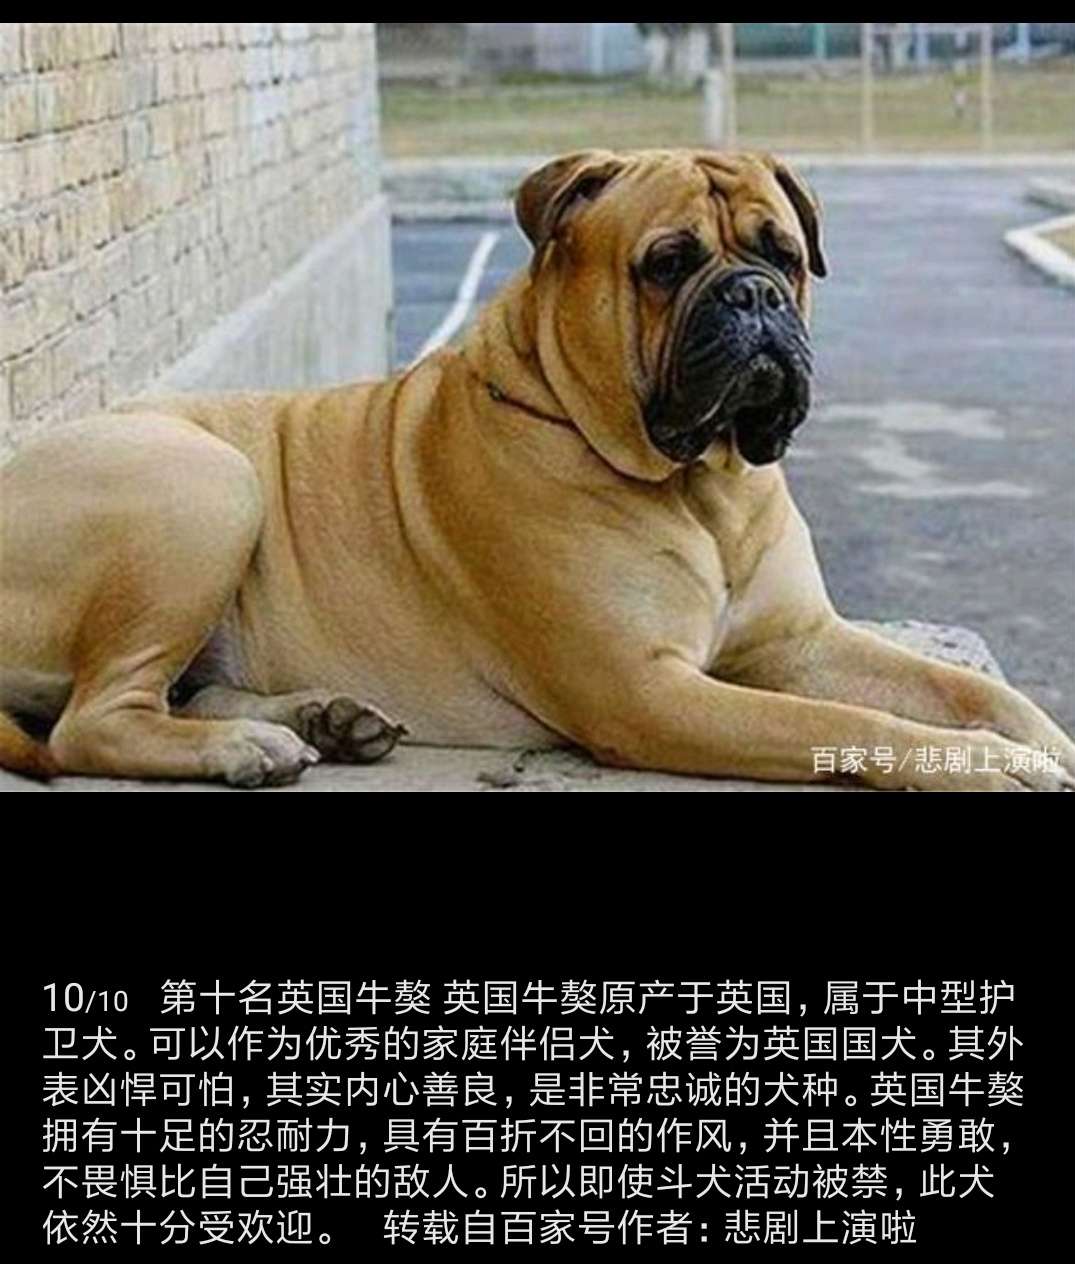 全球10大恶犬排行榜,中国的藏獒居然没排上!